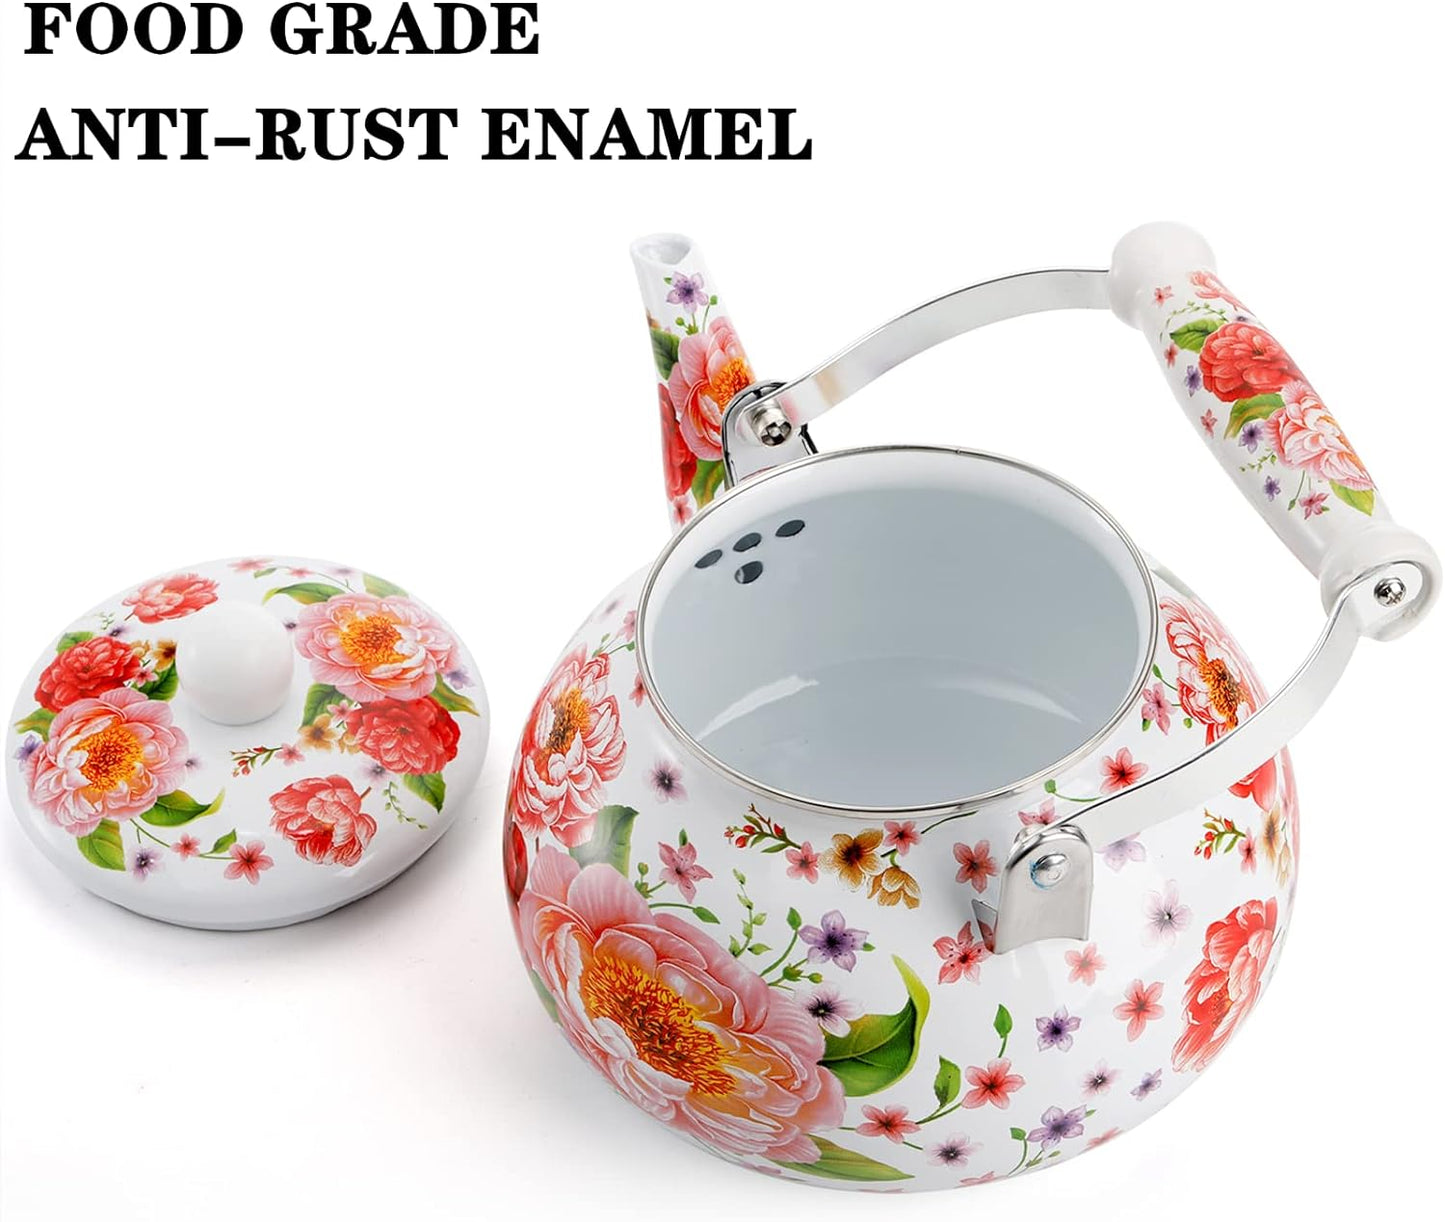 2.6 Qt Enamel Teakettle, Floral Design, Ceramic Handle, No Whistle